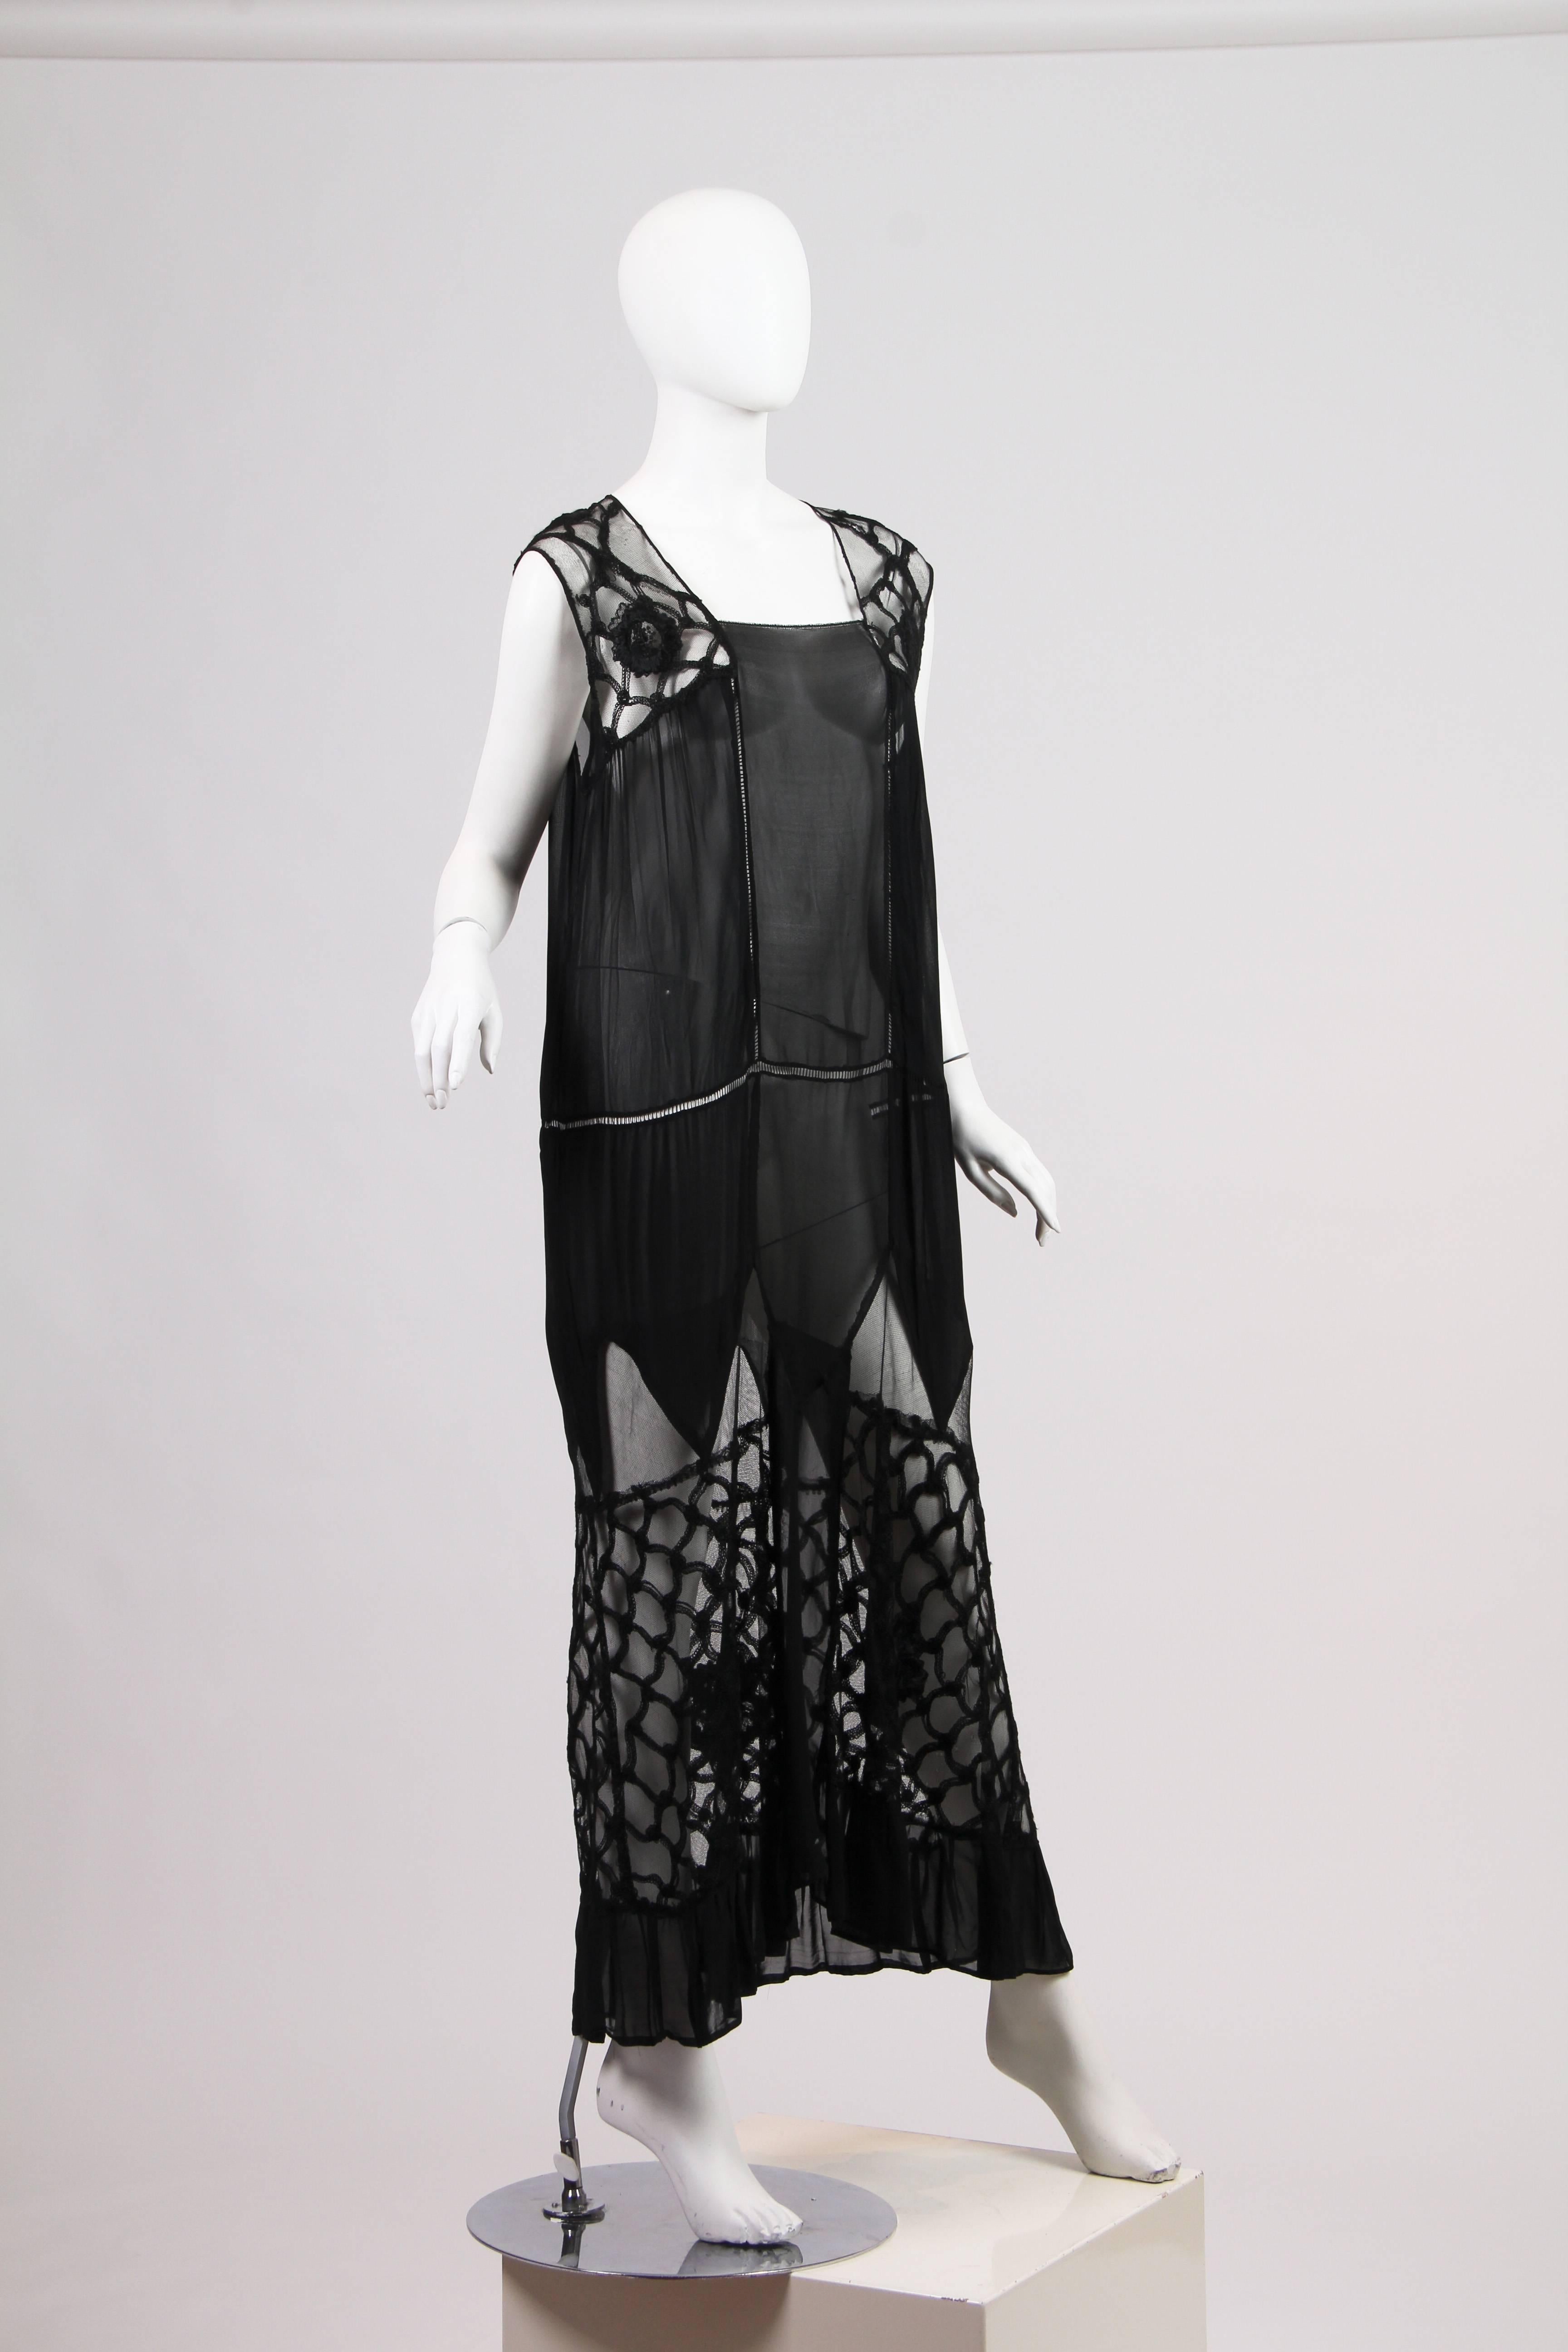 Early 1920s Chiffon and Lace Dress 1